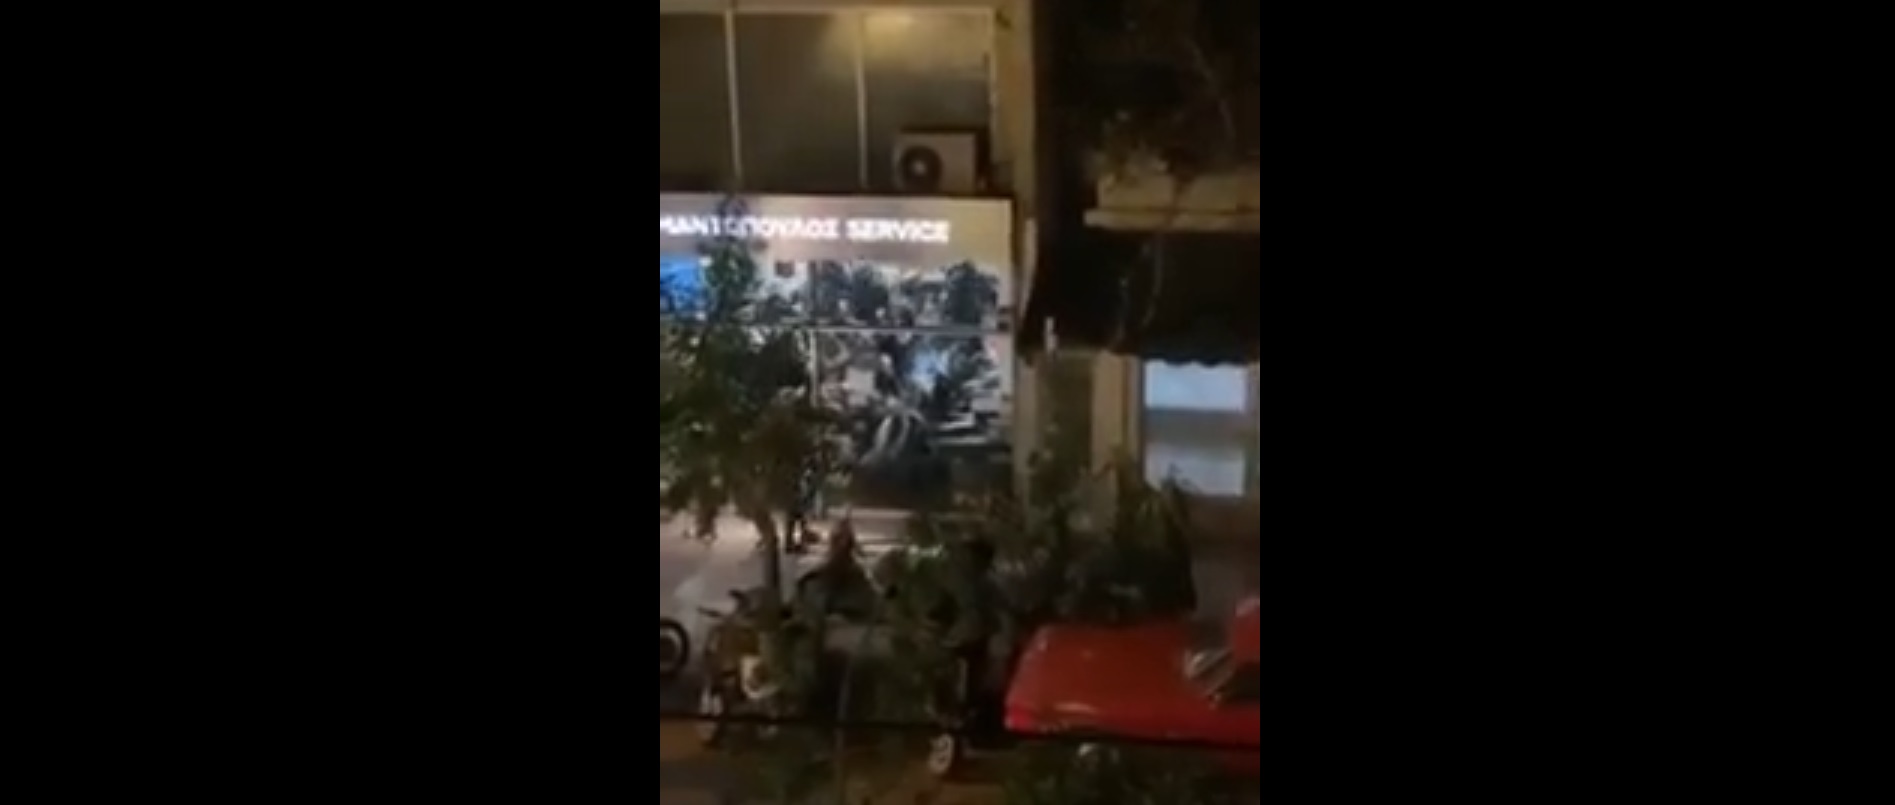 Νέα Σμύρνη: Κυβερνητικές δυνάμεις εισβάλουν σε κατάστημα και ξυλοκοπούν πολίτες! – Δείτε βίντεο